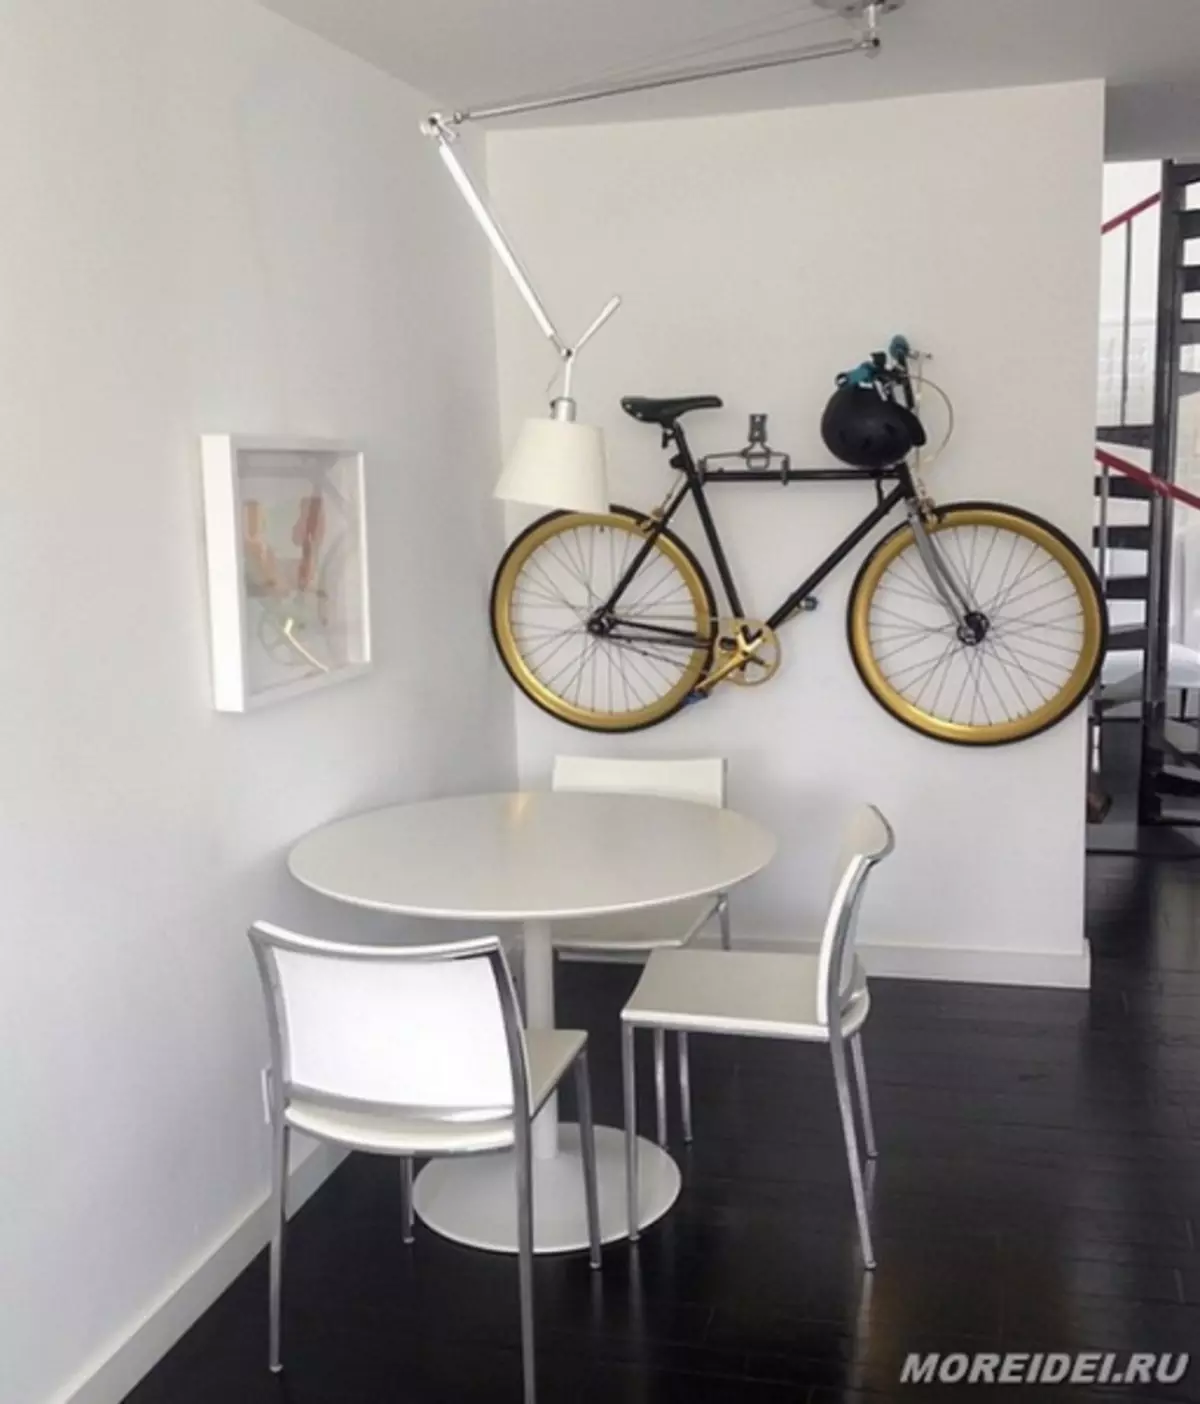 Penyimpanan sepeda di apartemen - 25 ide kreatif